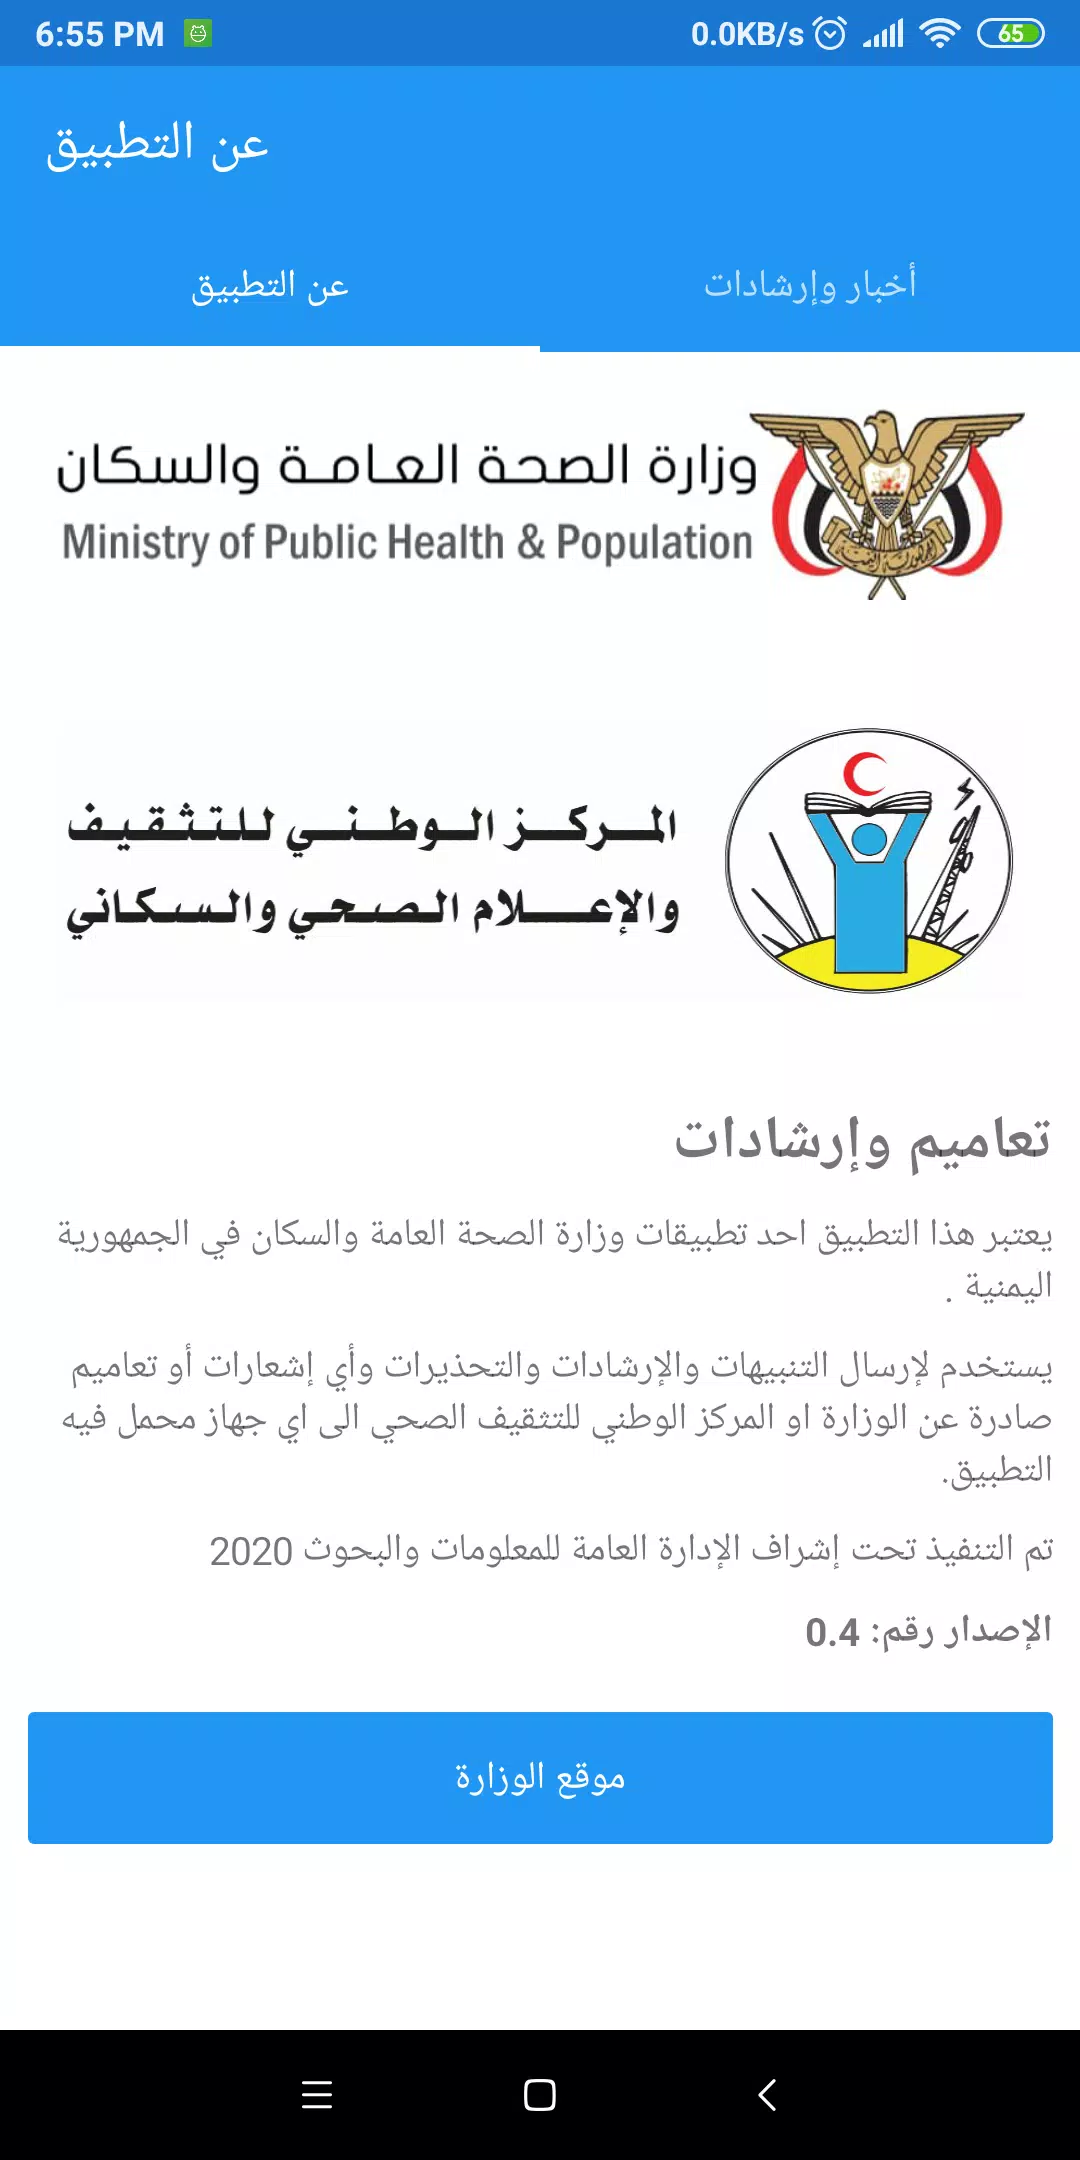 الصحة العامة والسكان وزارة وزارة الصحة